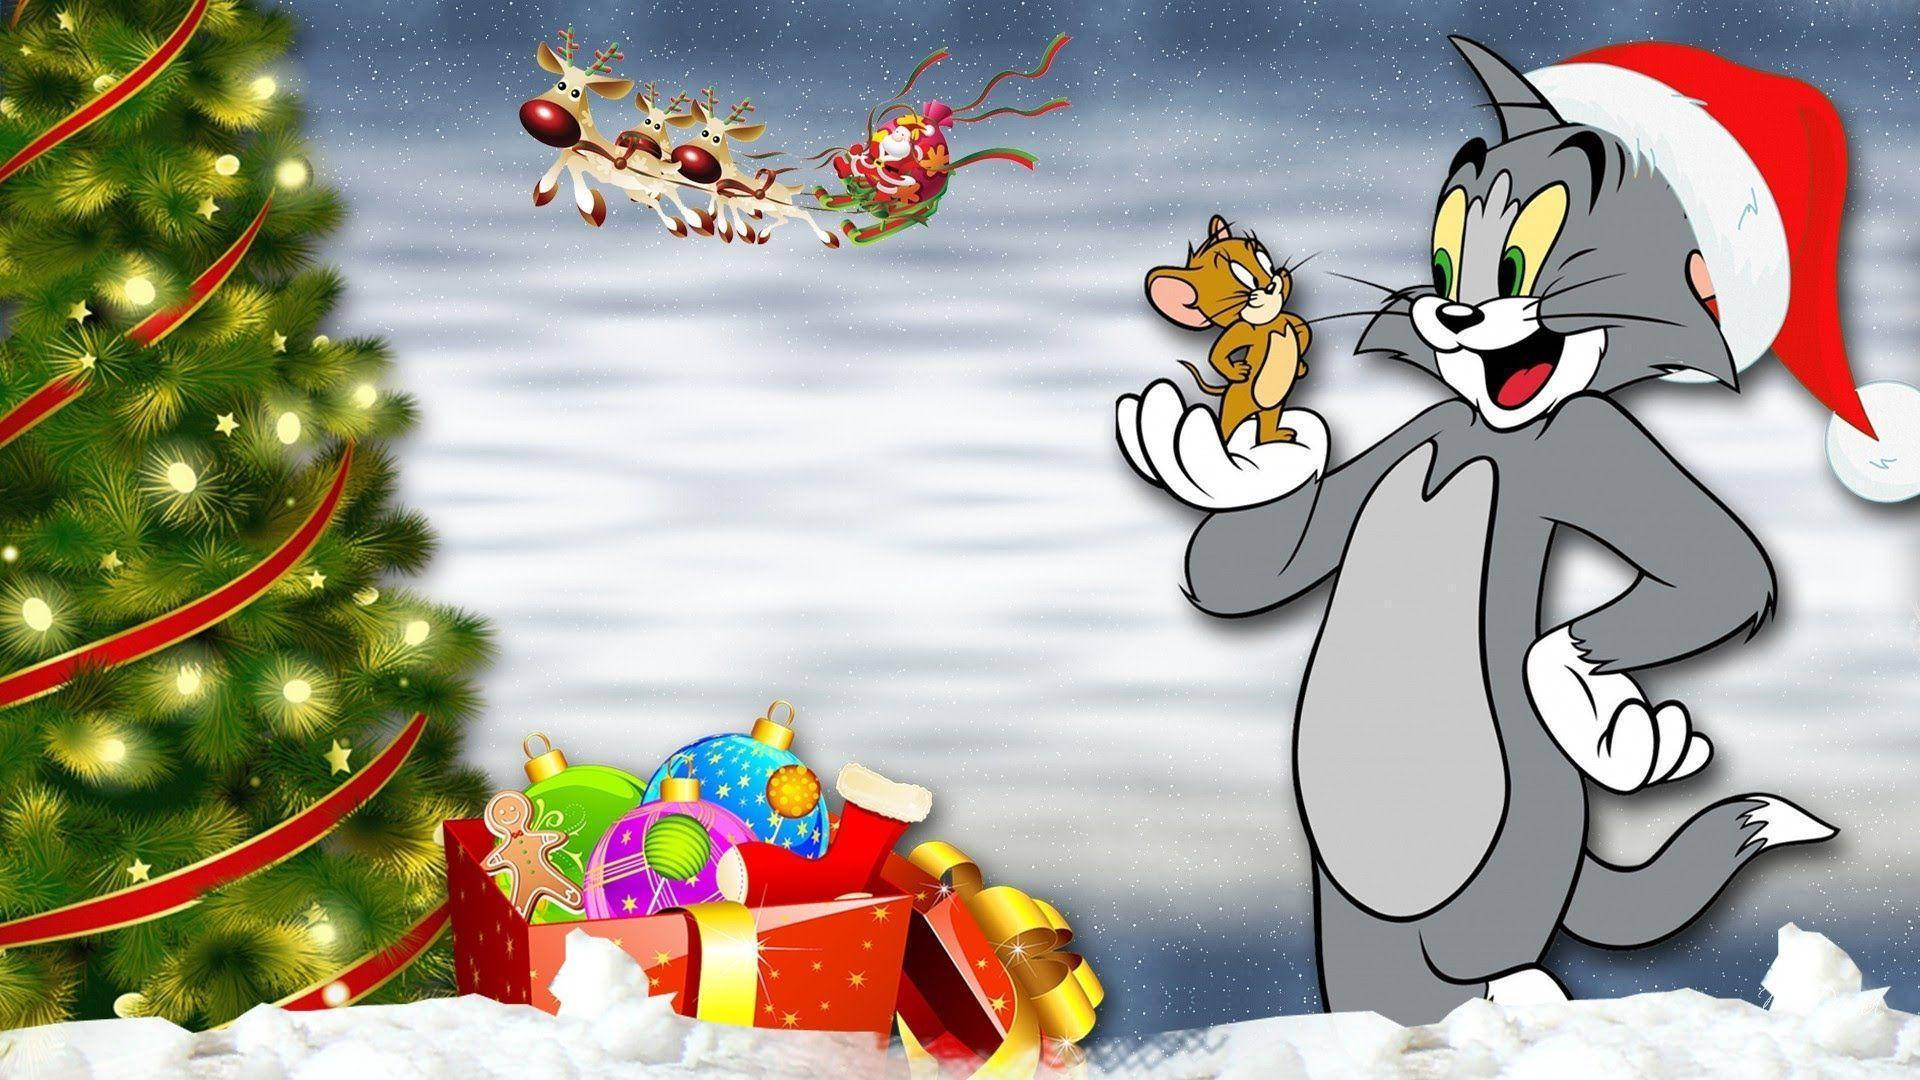 Papel De Parede Do Natal Do Tom E Jerry. Papel de Parede